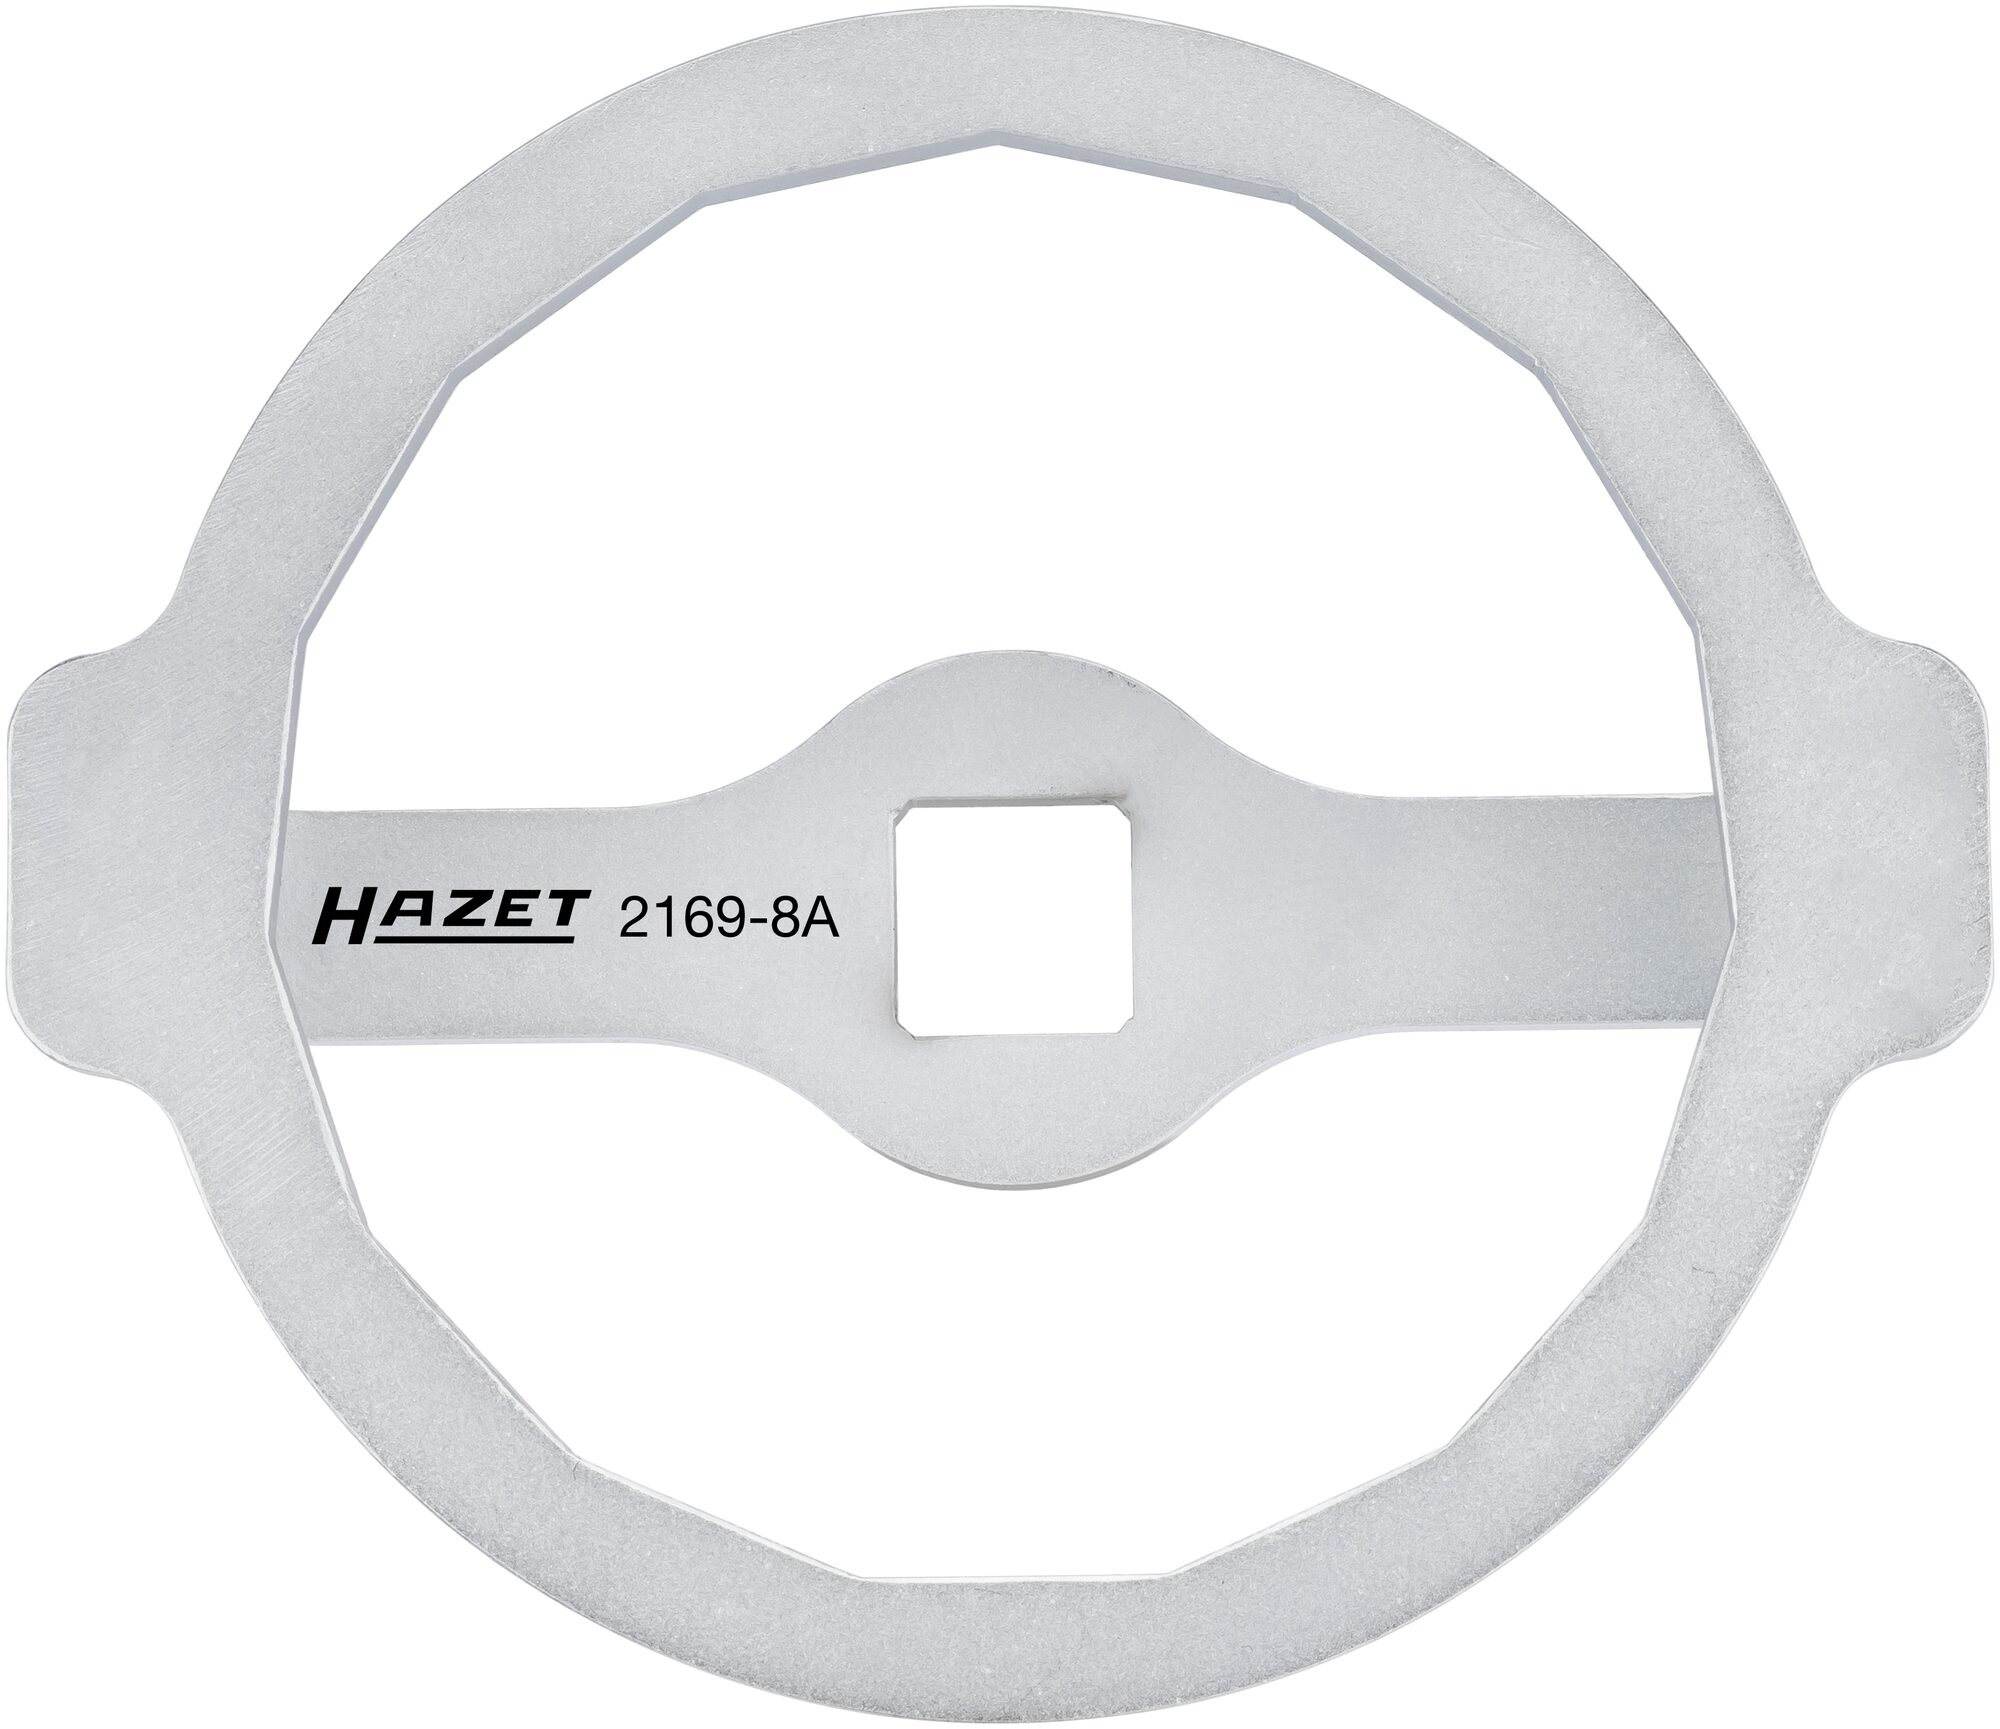 HAZET Ölfilter-Schlüssel 2169-8A · Vierkant hohl 12,5 mm (1/2 Zoll) · Außen 15-kant Profil · 105 mm